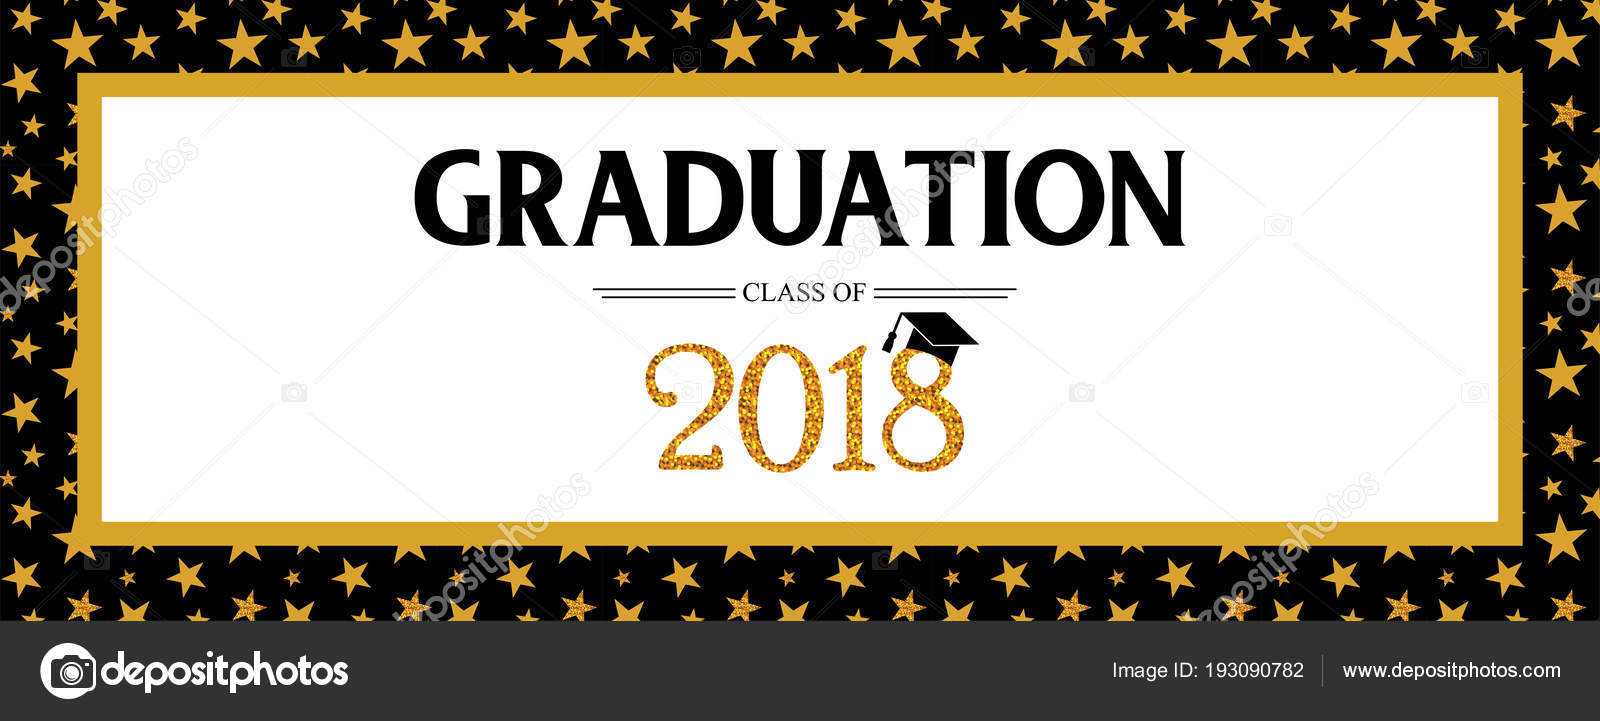 Graduation Banner Template | Graduation Class Of 2018 Within Graduation Banner Template